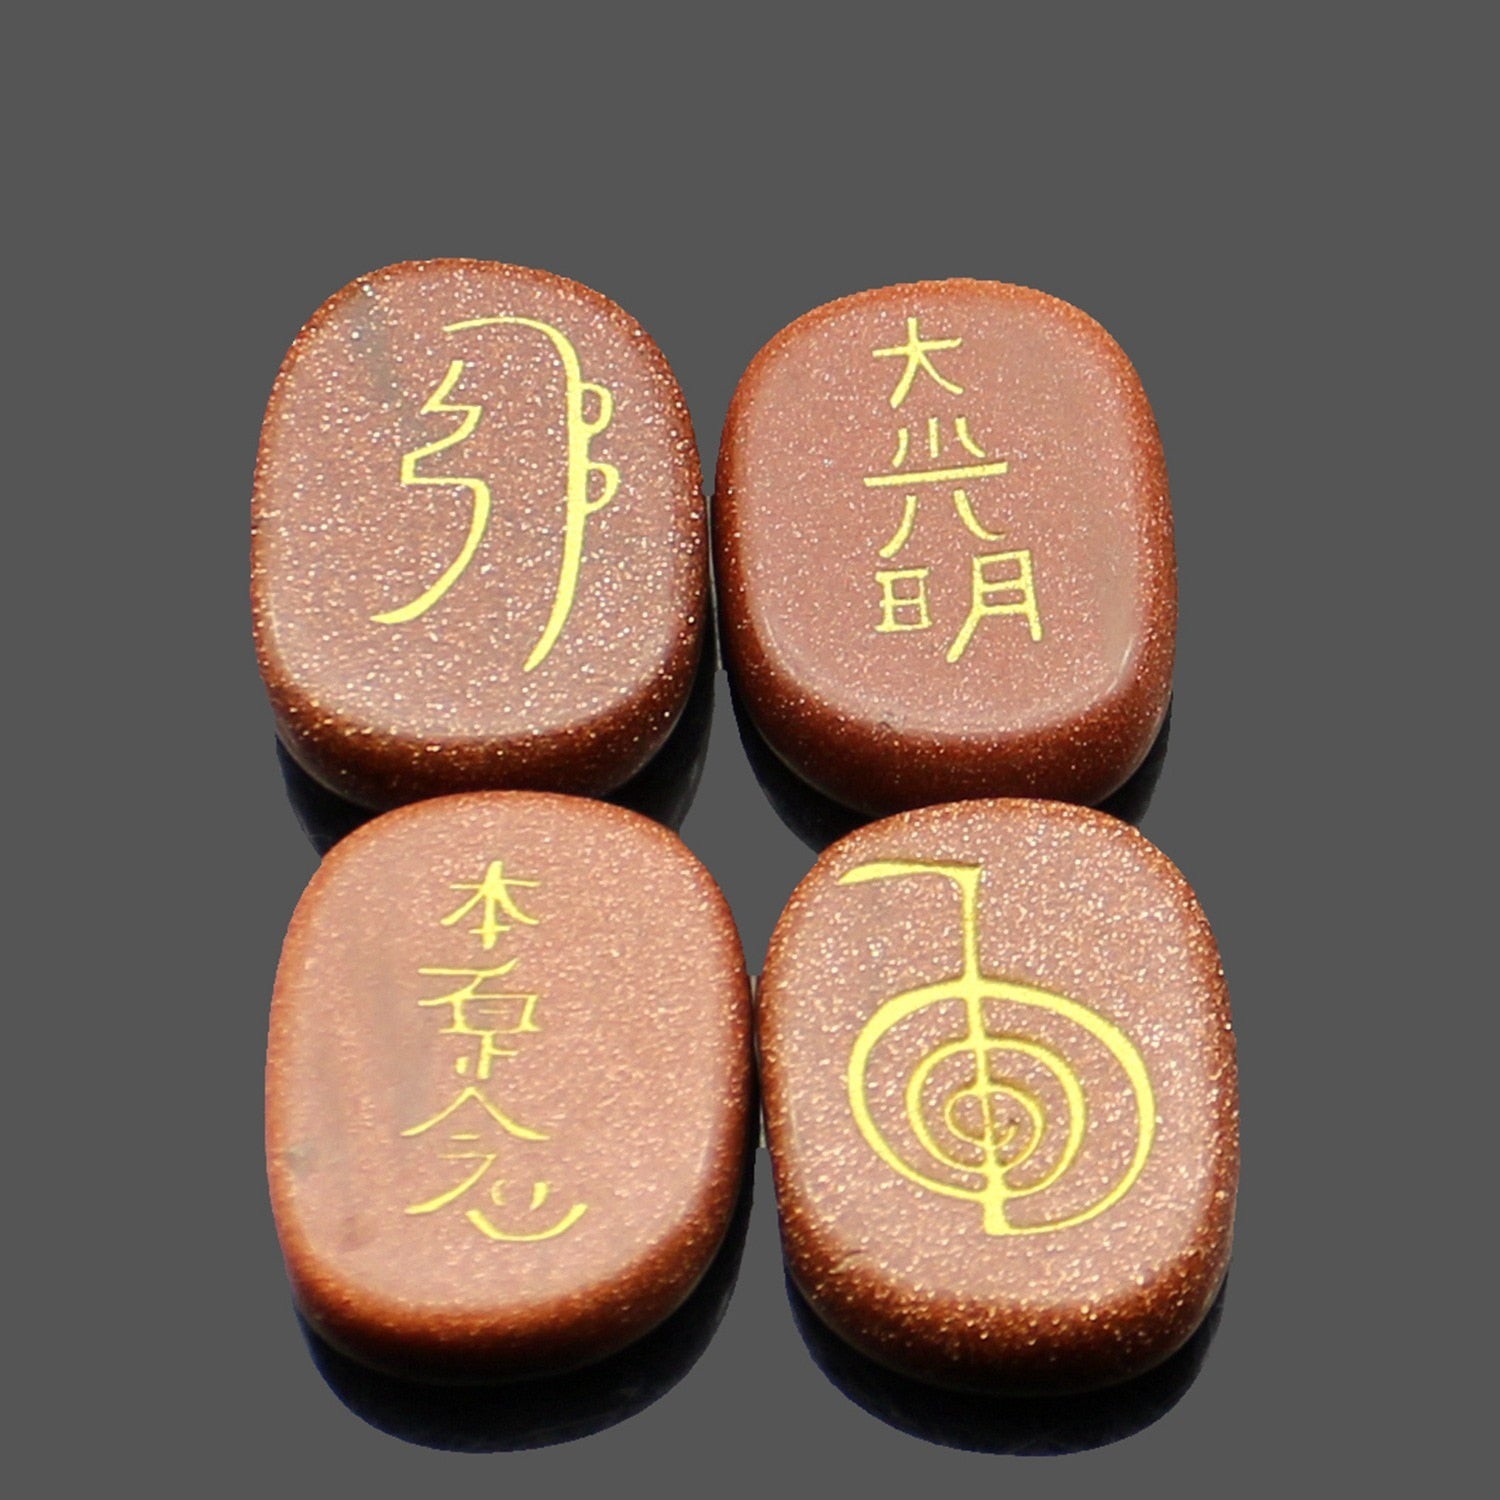 four reiki symbol engraved stones chokurei seihiki honshazeshonen daikomyo  (power, emotion, distance, higher level or master) gold sand